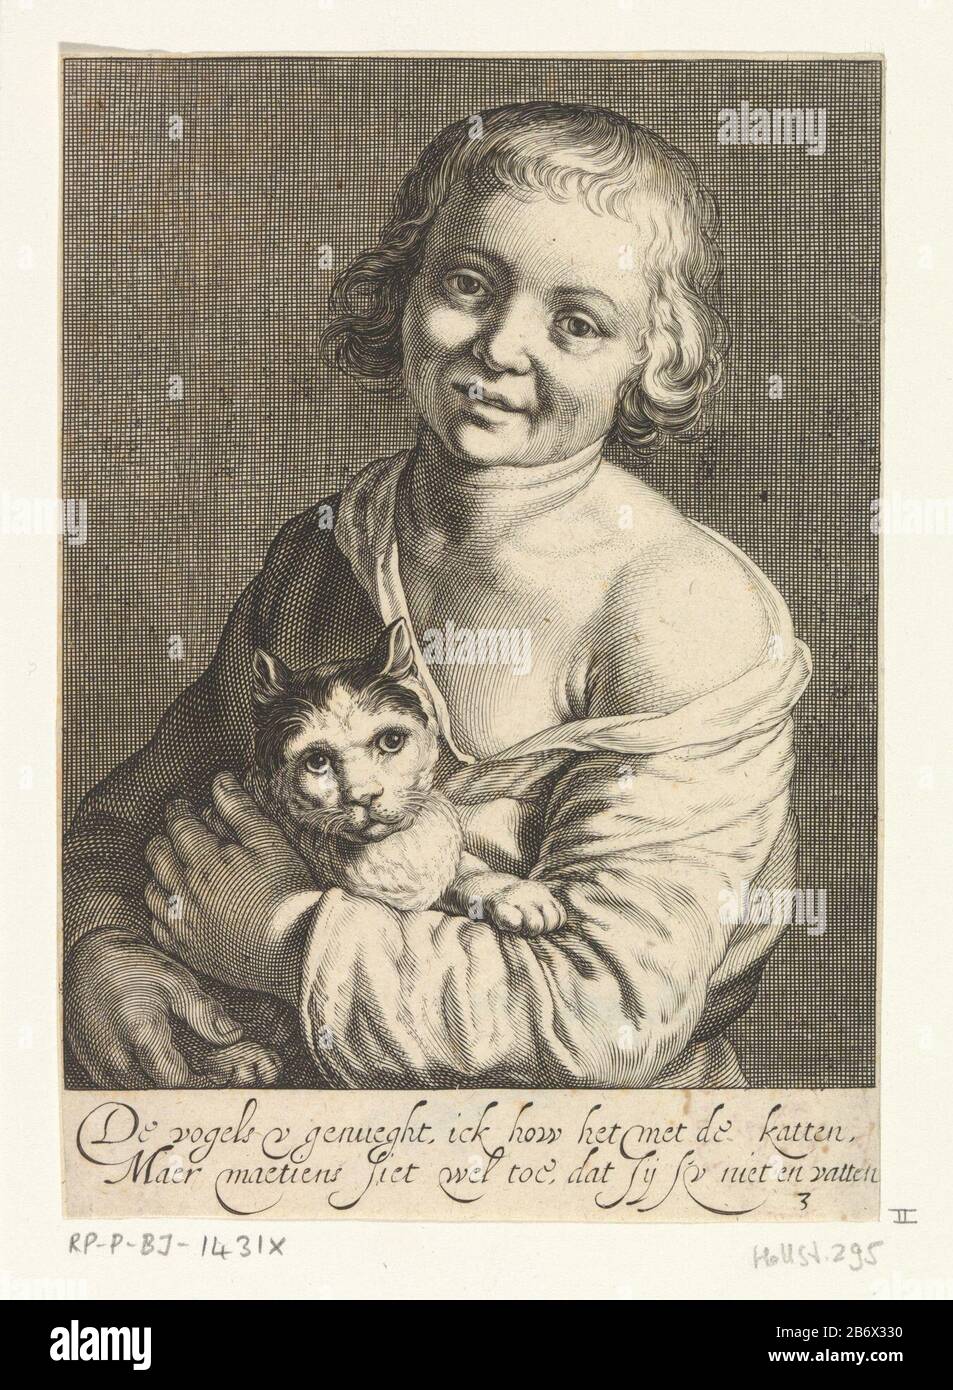 Jongen ha incontrato kat Een jongen houdt een kat in de armen, dicht tegen het lichaam aan. Met twanderegelig Nederlands onderschrift, Foto Stock